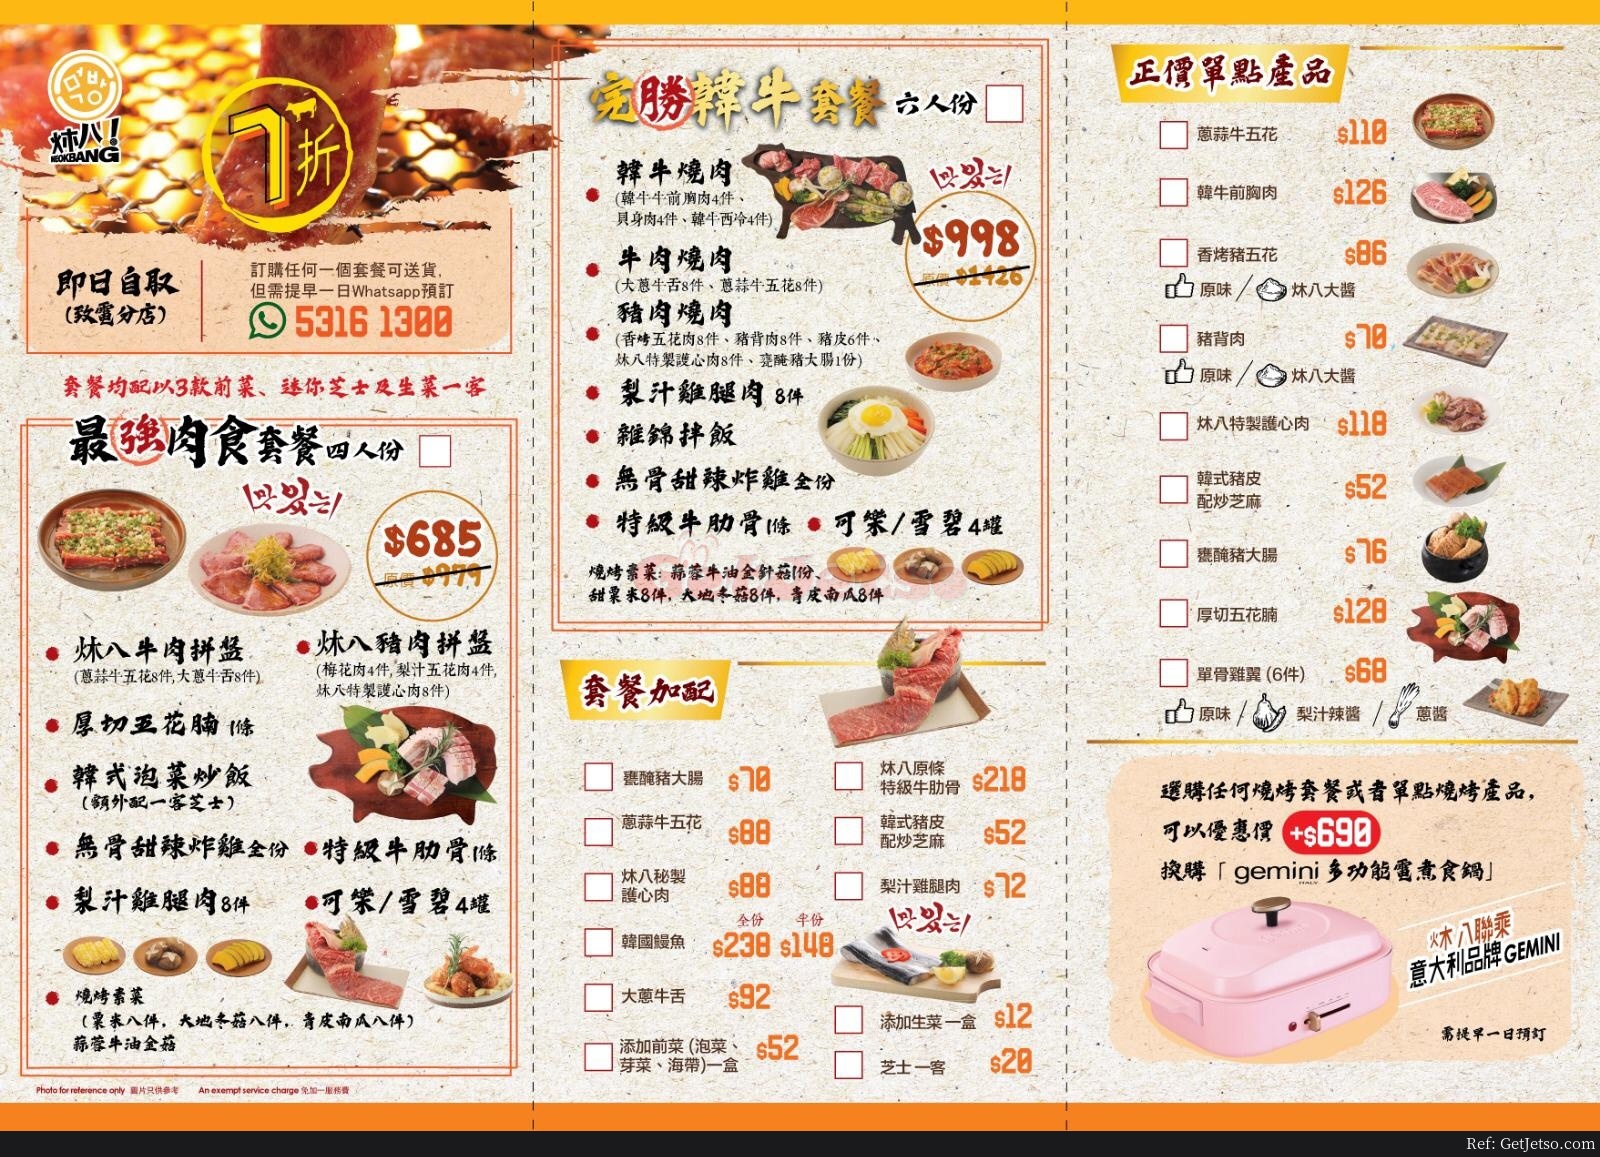 炑八韓烤燒肉套餐外賣7折優惠(1月6日更新)圖片1